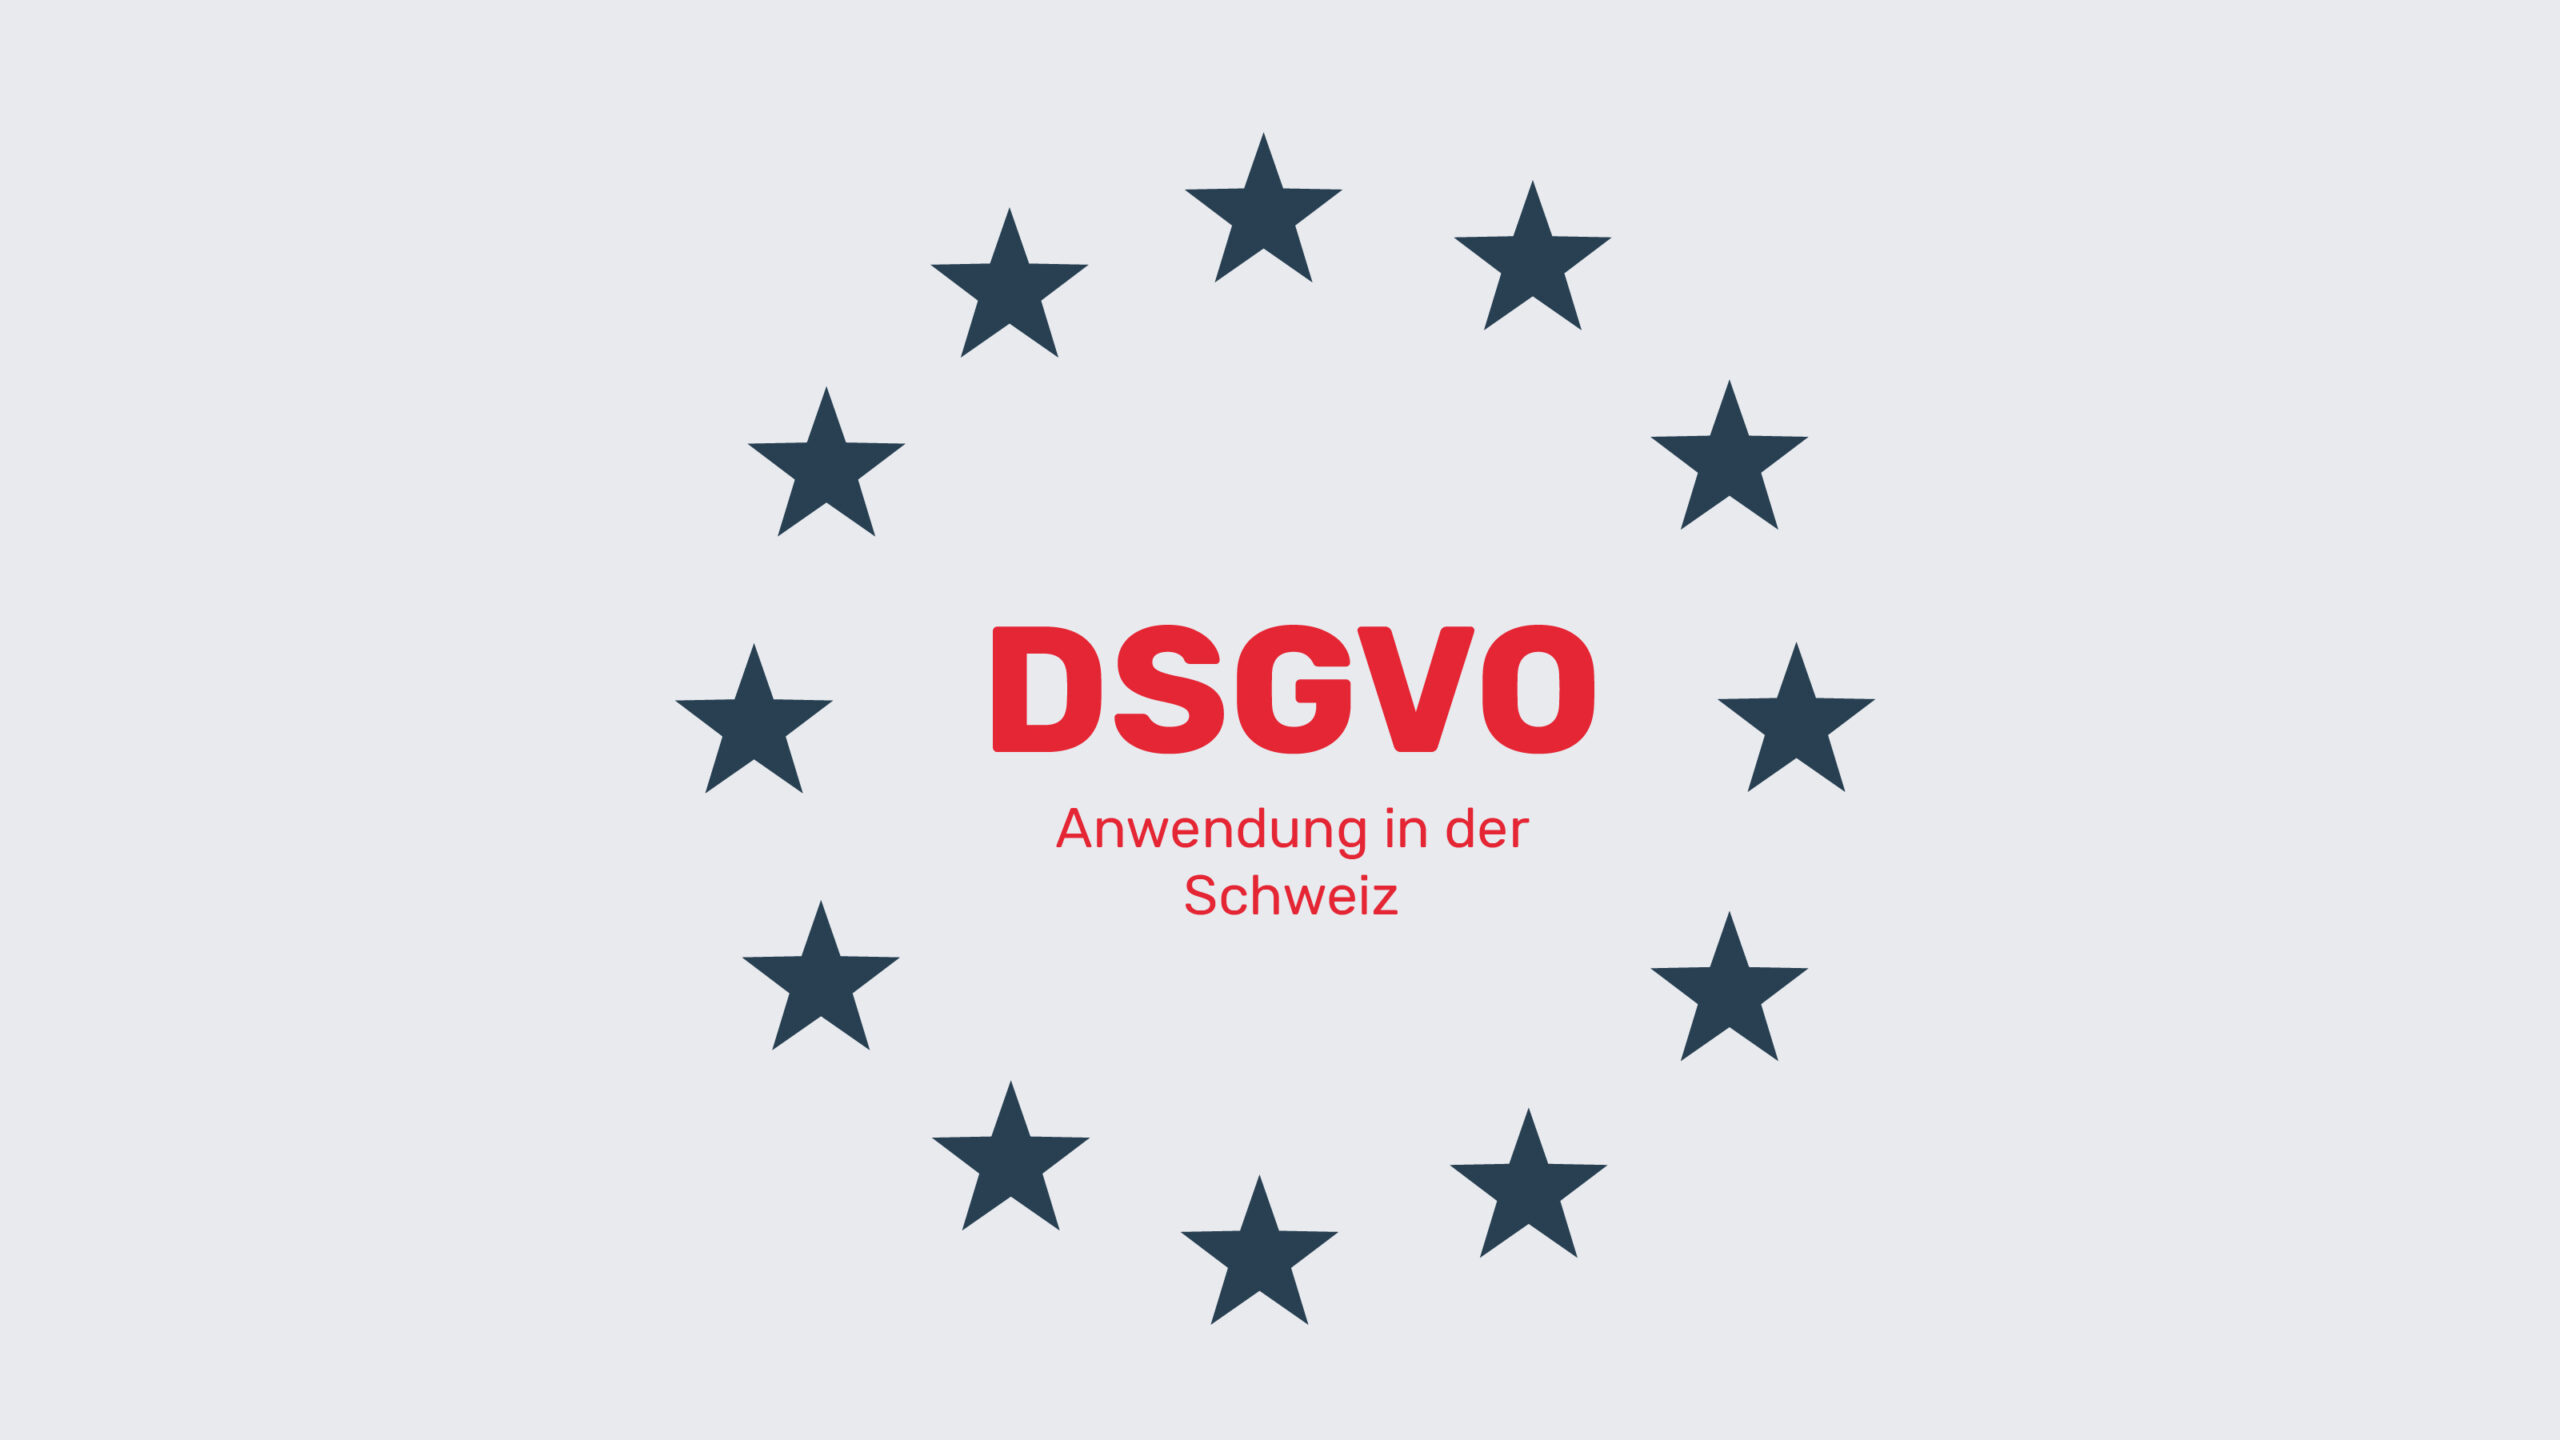 DSGVO Anwendung in der Schweiz